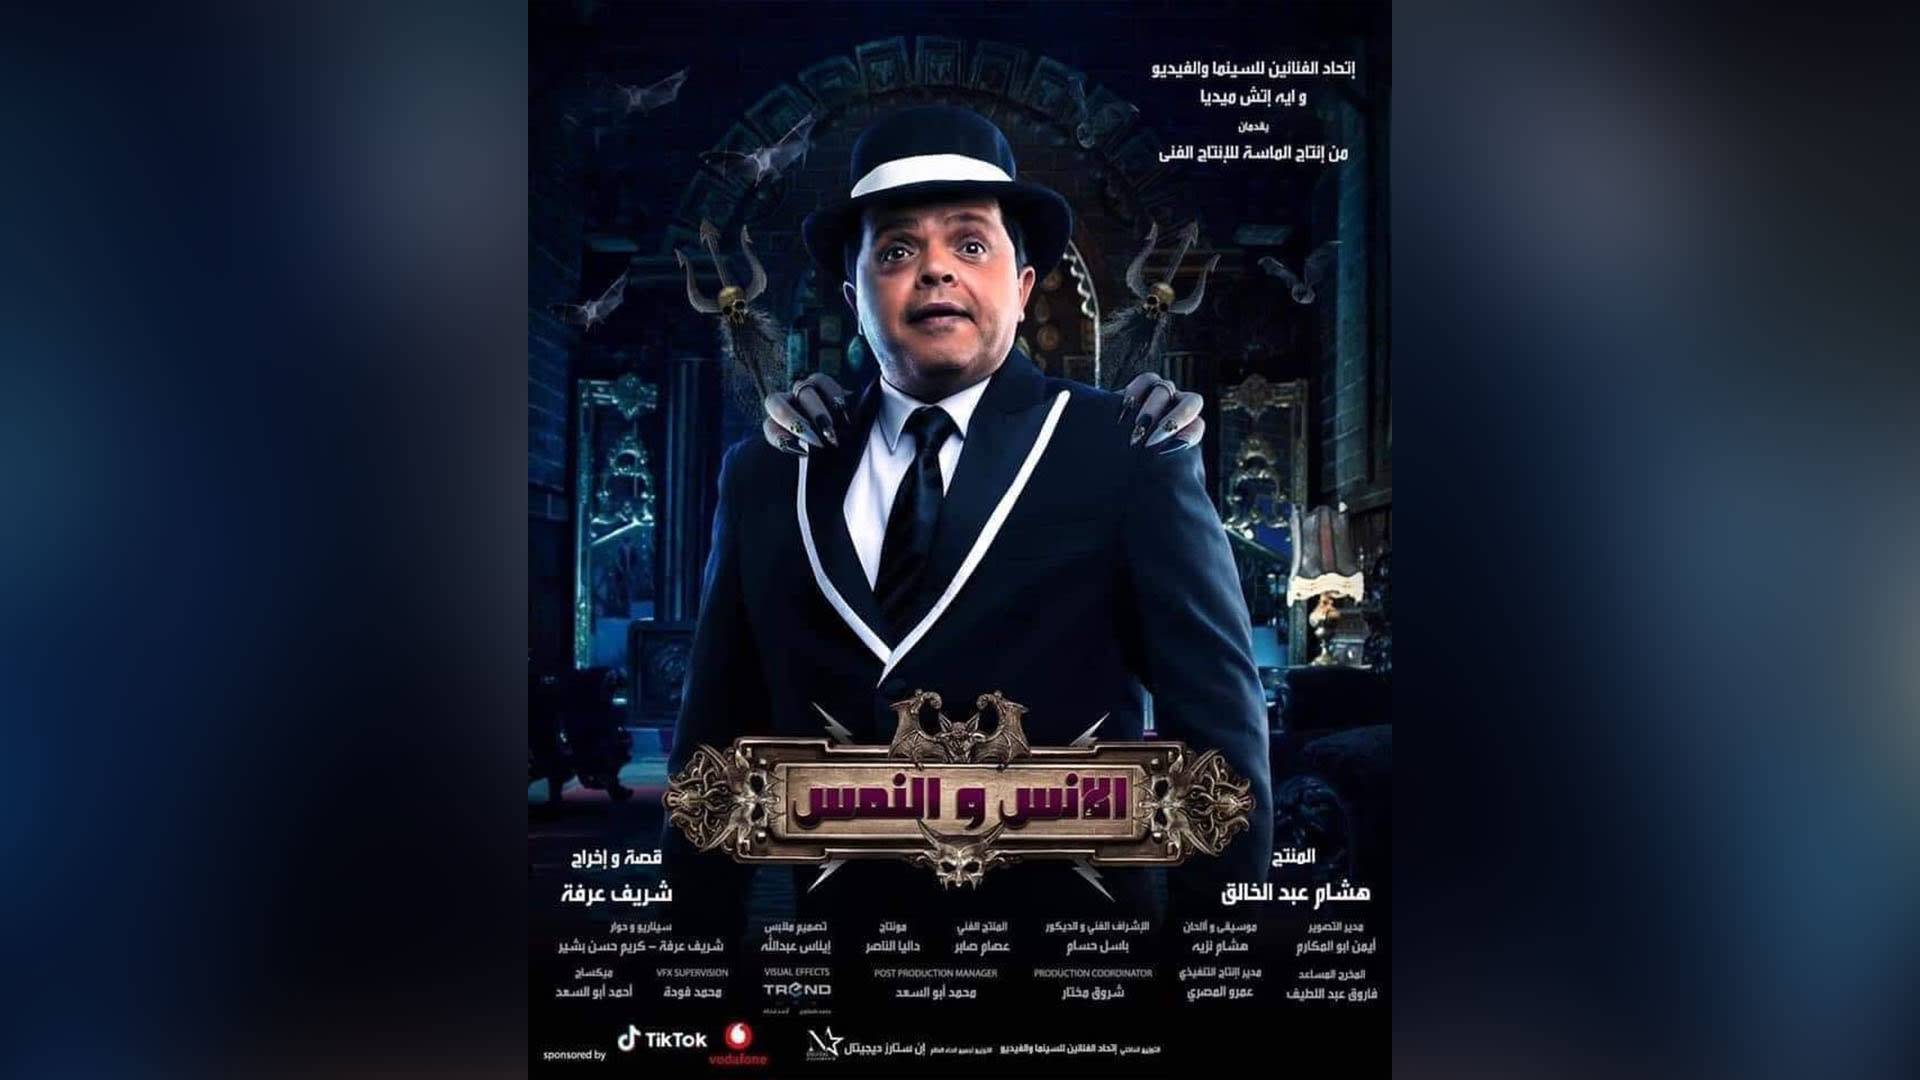 "الإنس والنمس" يعيد محمد هنيدي إلى صالات السينما في ذكرى عرض أشهر أفلامه